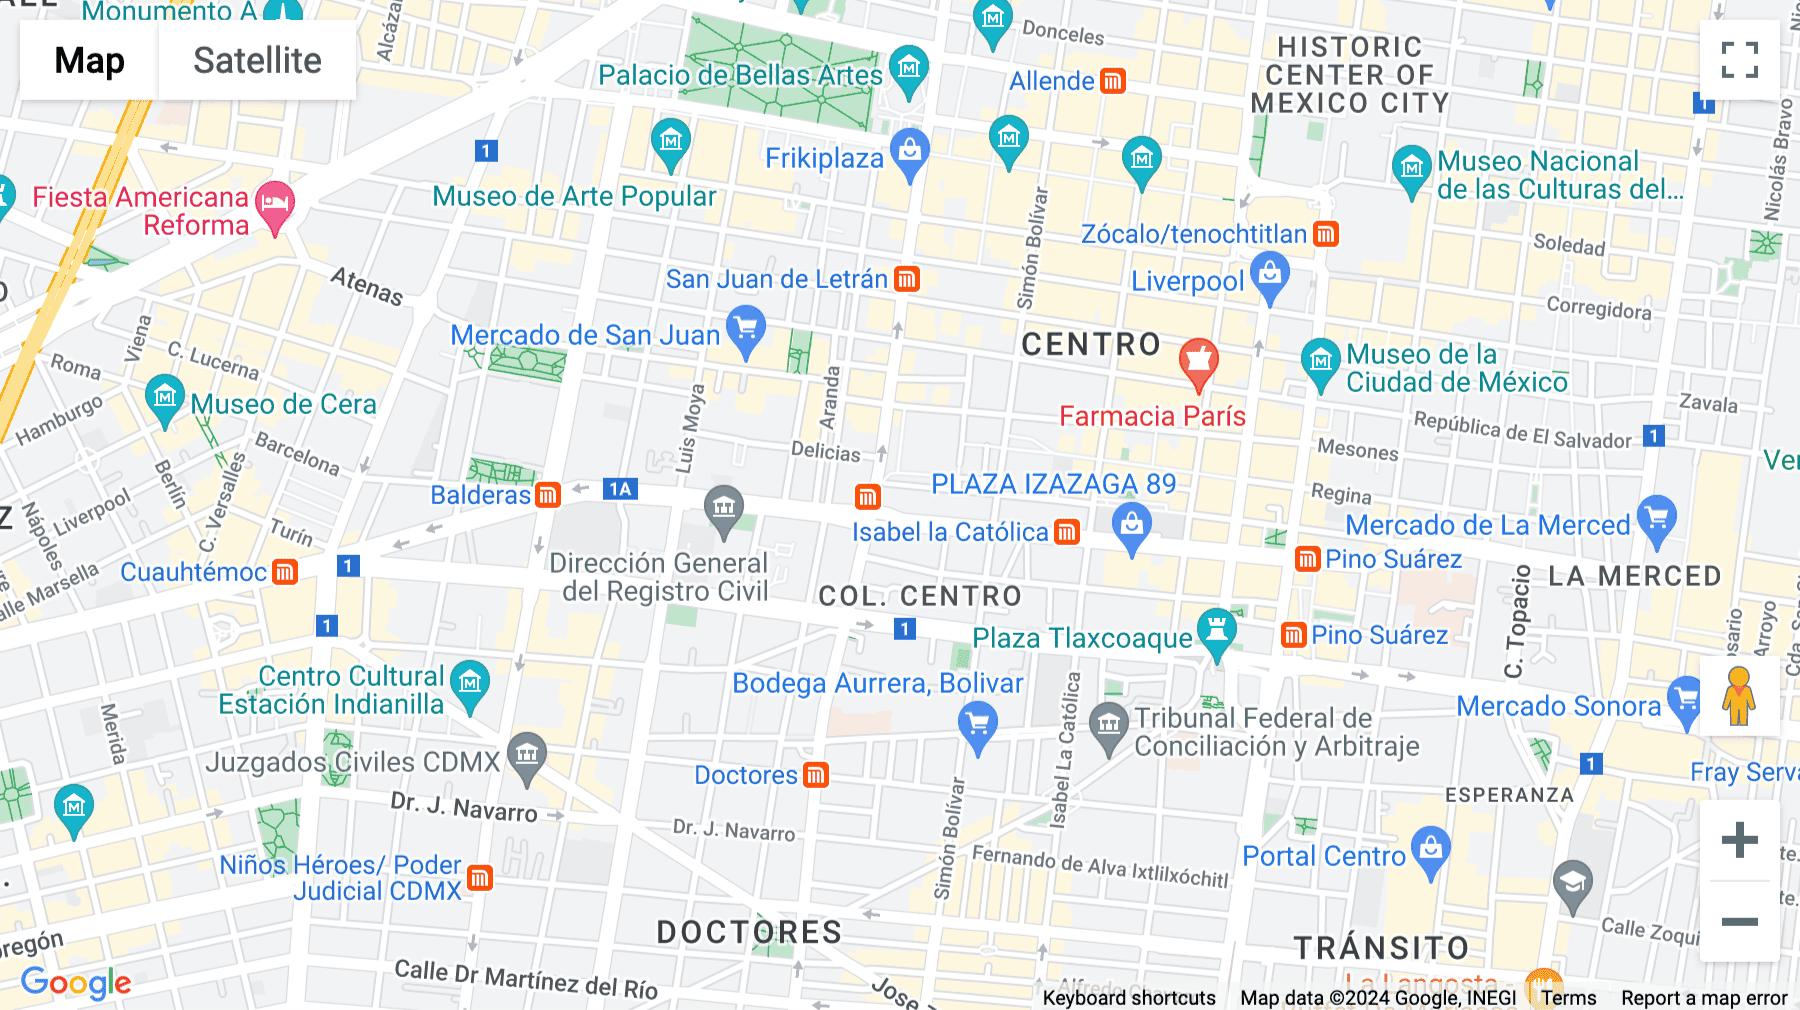 Click for interative map of José María Izazaga 8, Mexico City